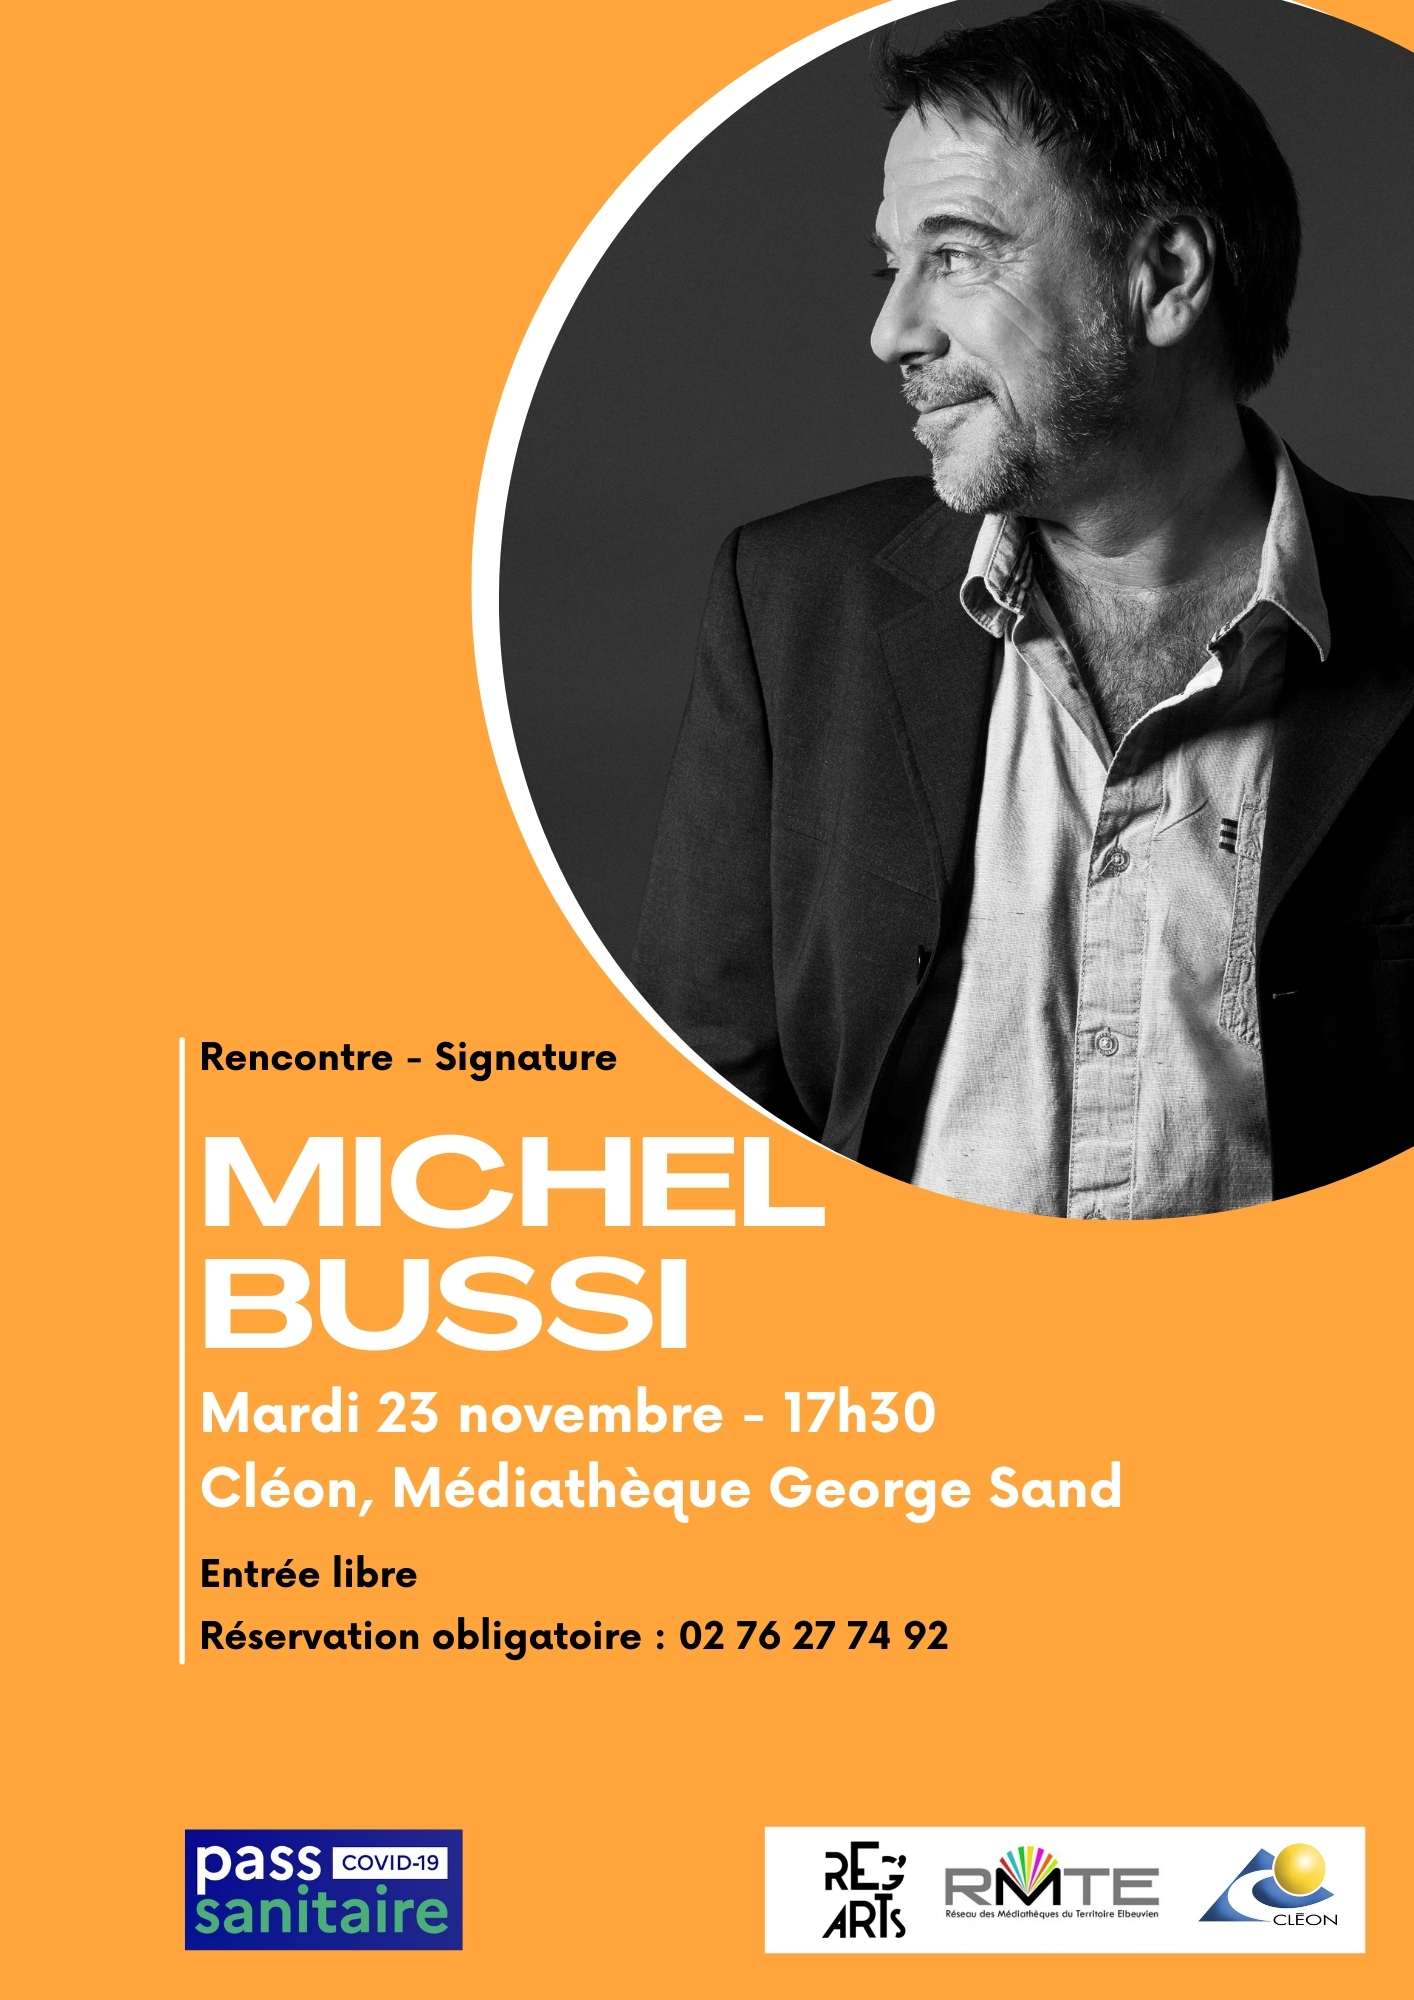 Rencontre avec Michel Bussi